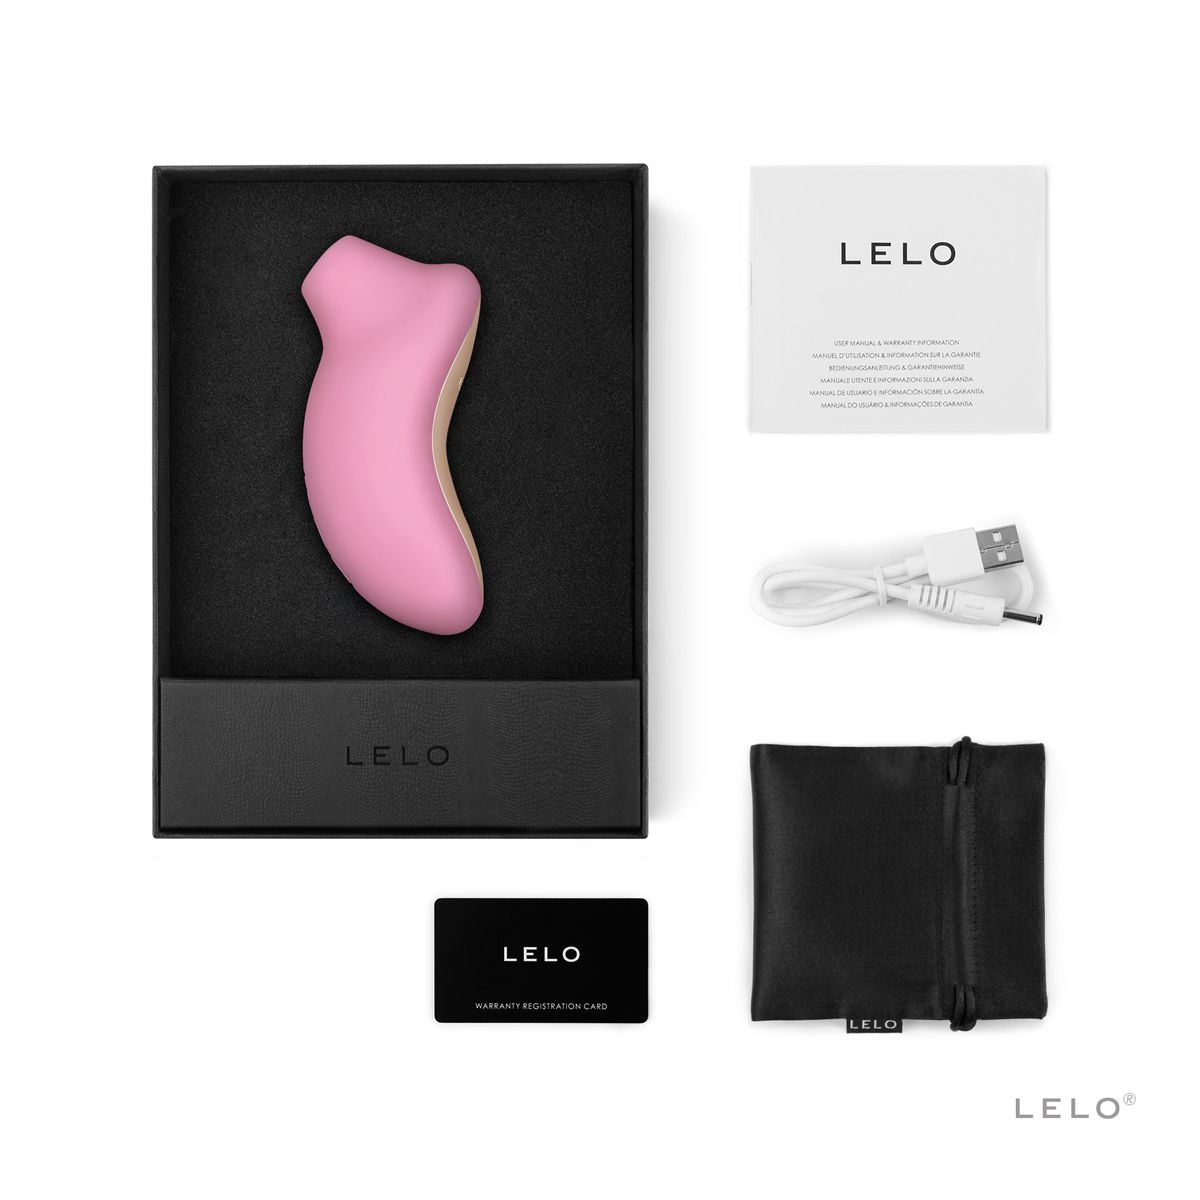 pink - Cruise clitoris-vibrators LELO Sona LELO